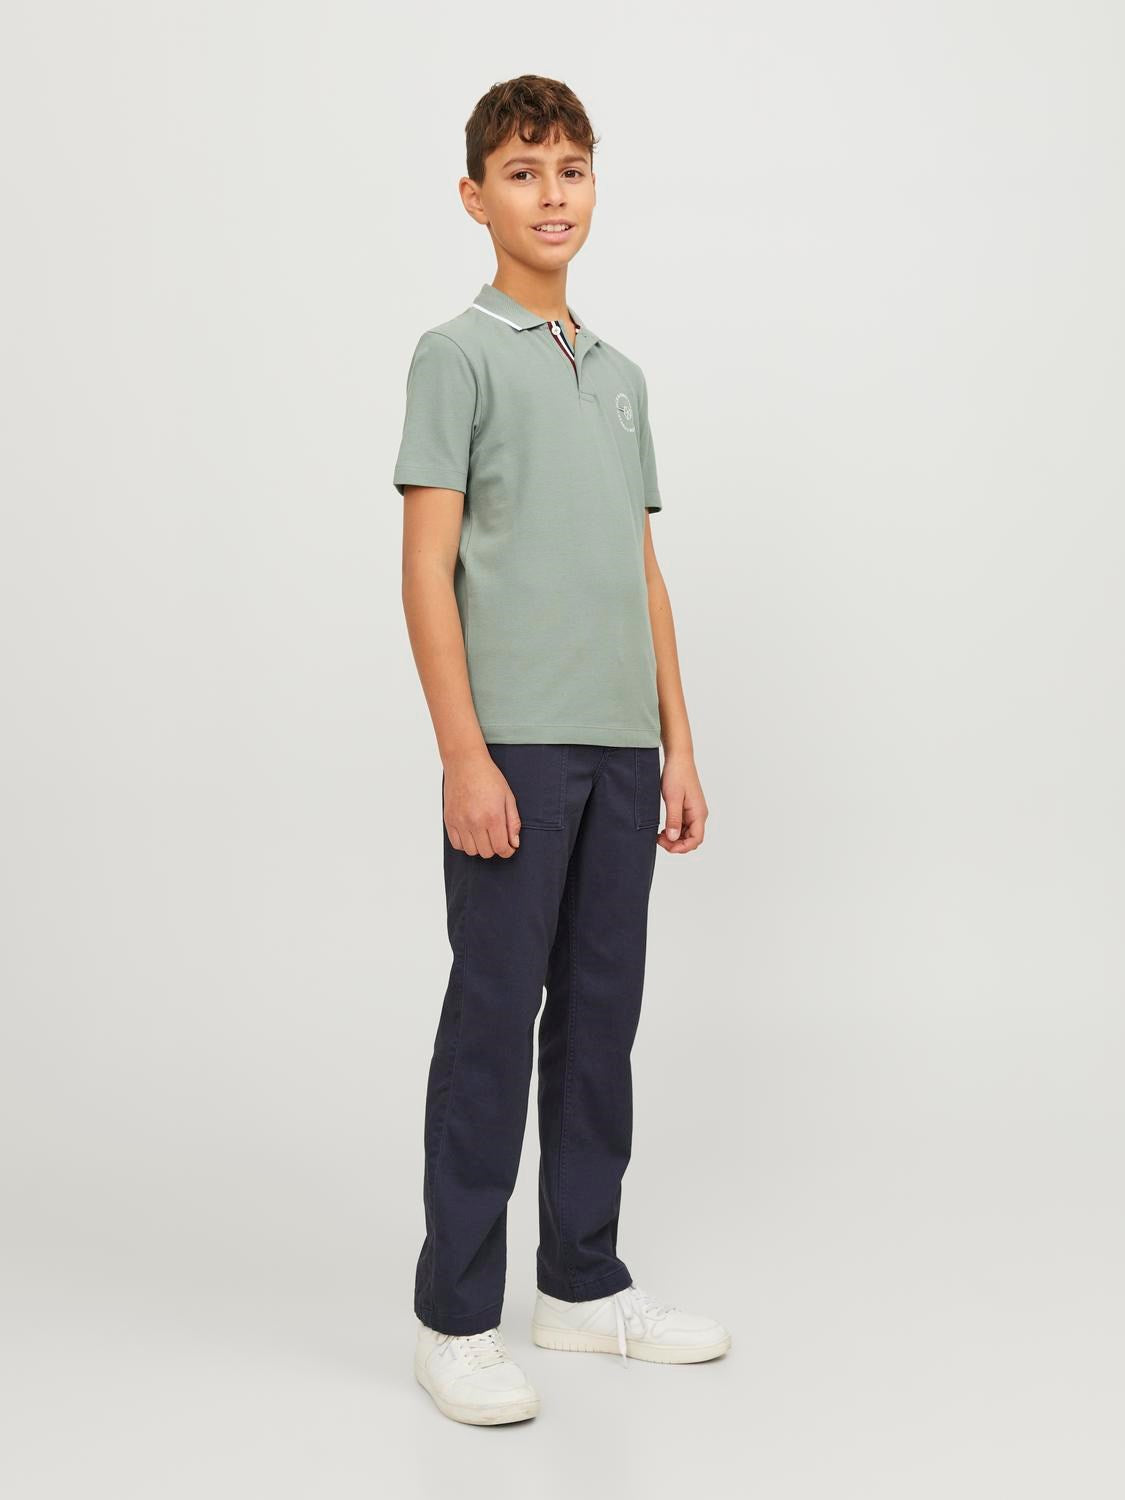 Shield Junior Boy Lily Pad Polo Shirt-Side view